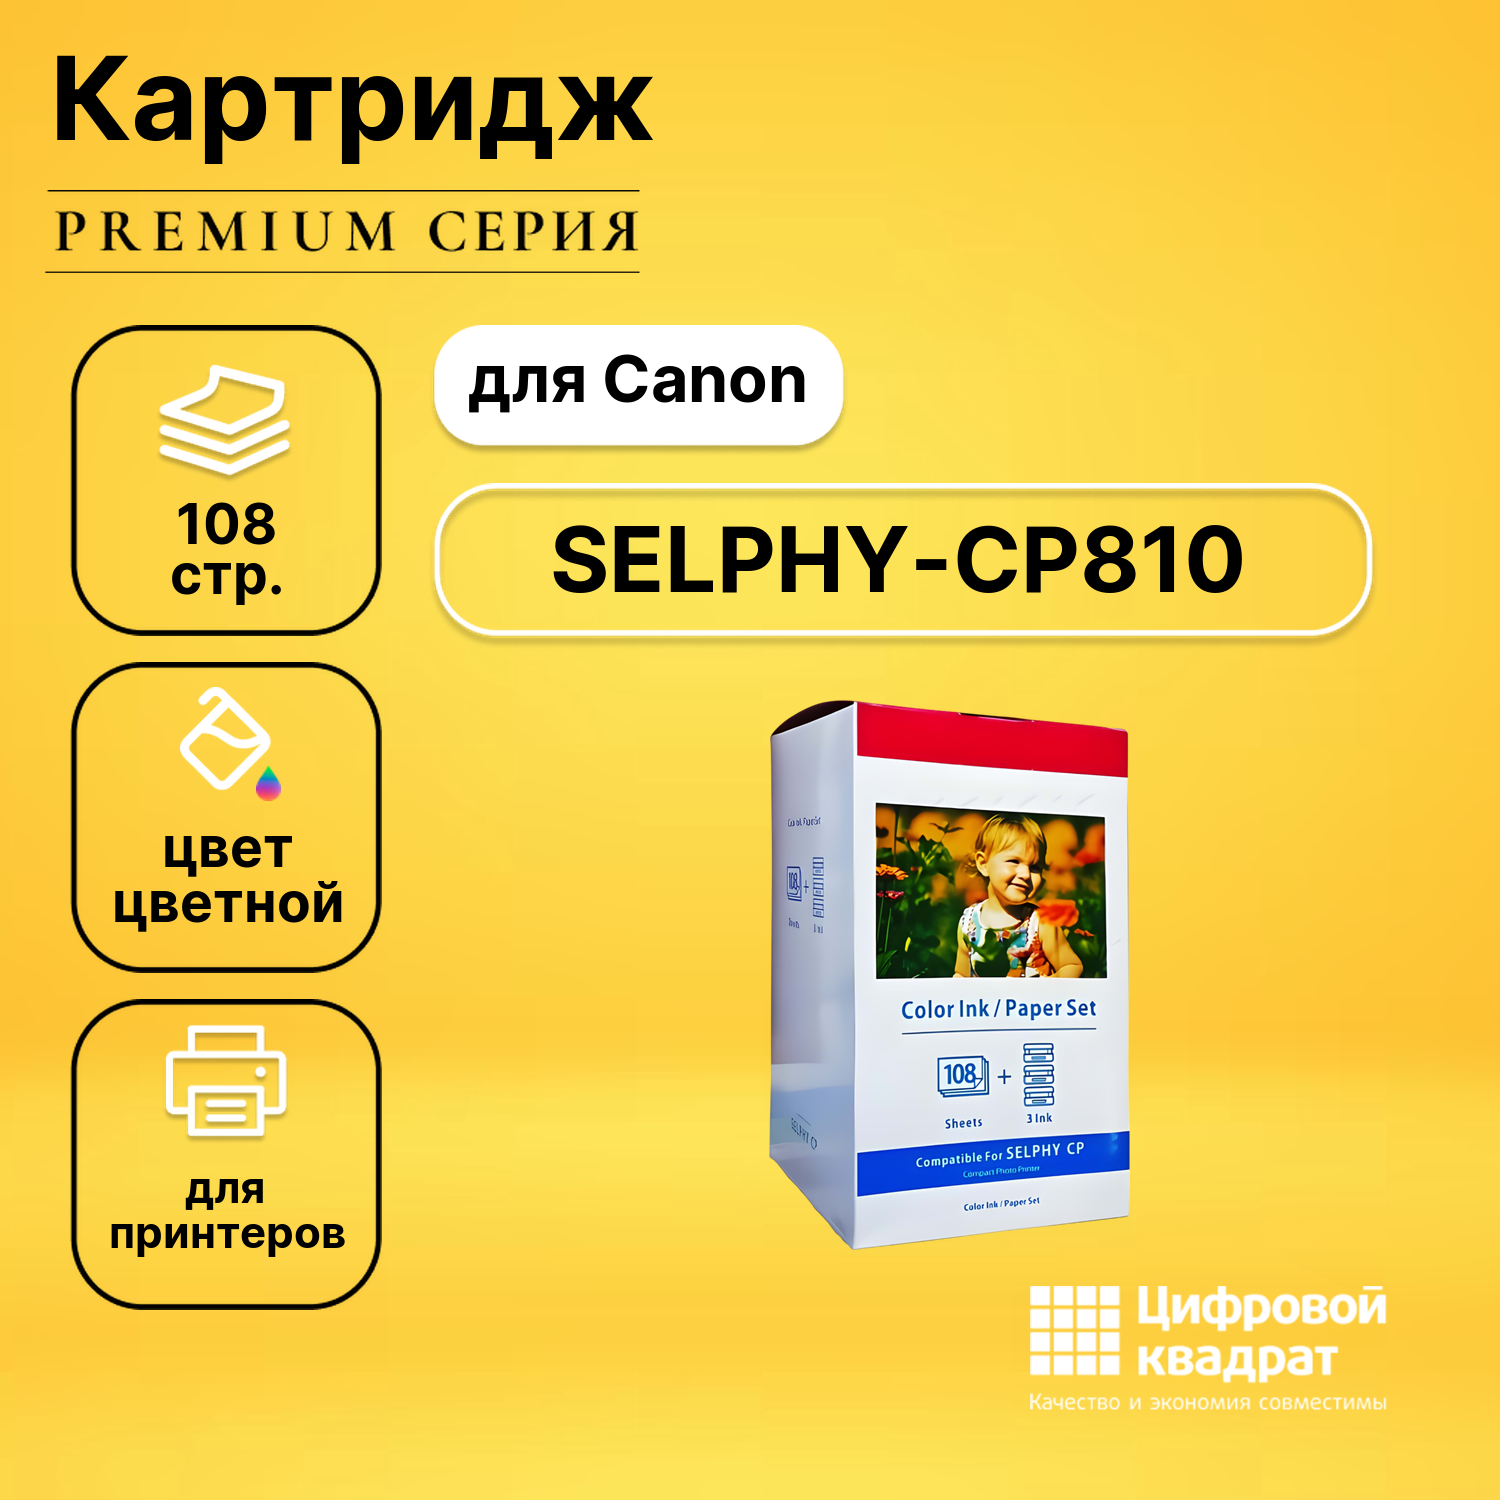 Набор для печати SELPHY-CP810 для Canon 3 картриджа + фотобумага, 108 листов совместимый